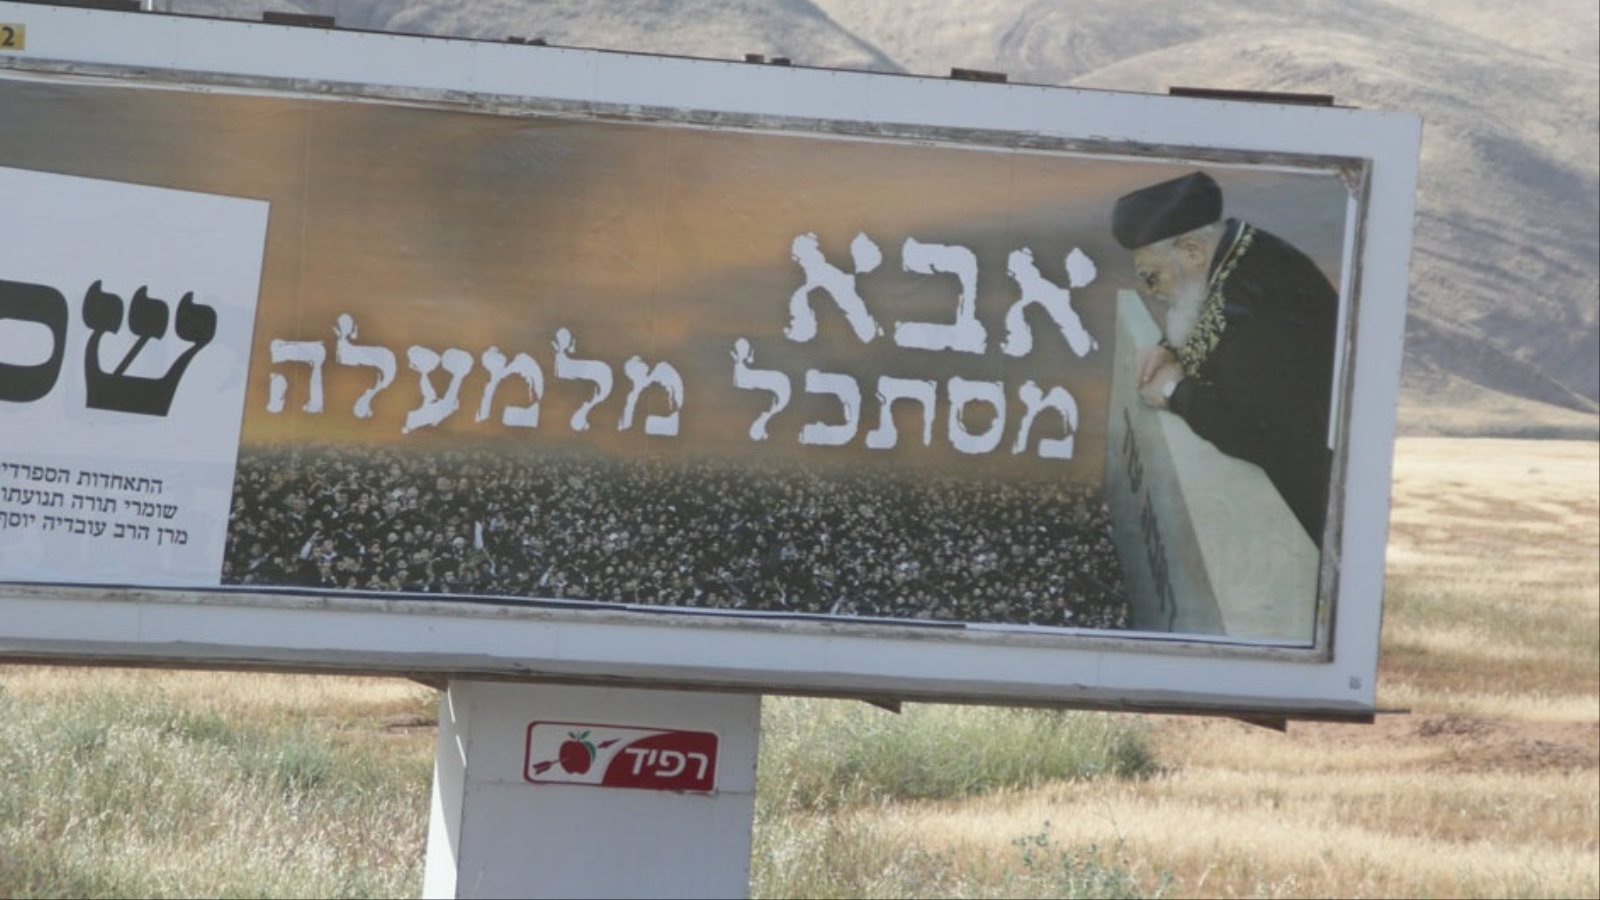 ‪لافتة تحمل صورة الحاخام عوفاديا يوسف تشير إلى أن المستوطنين يستوطنون الضفة انطلاقا من معتقدات دينية‬  (الجزيرة نت)